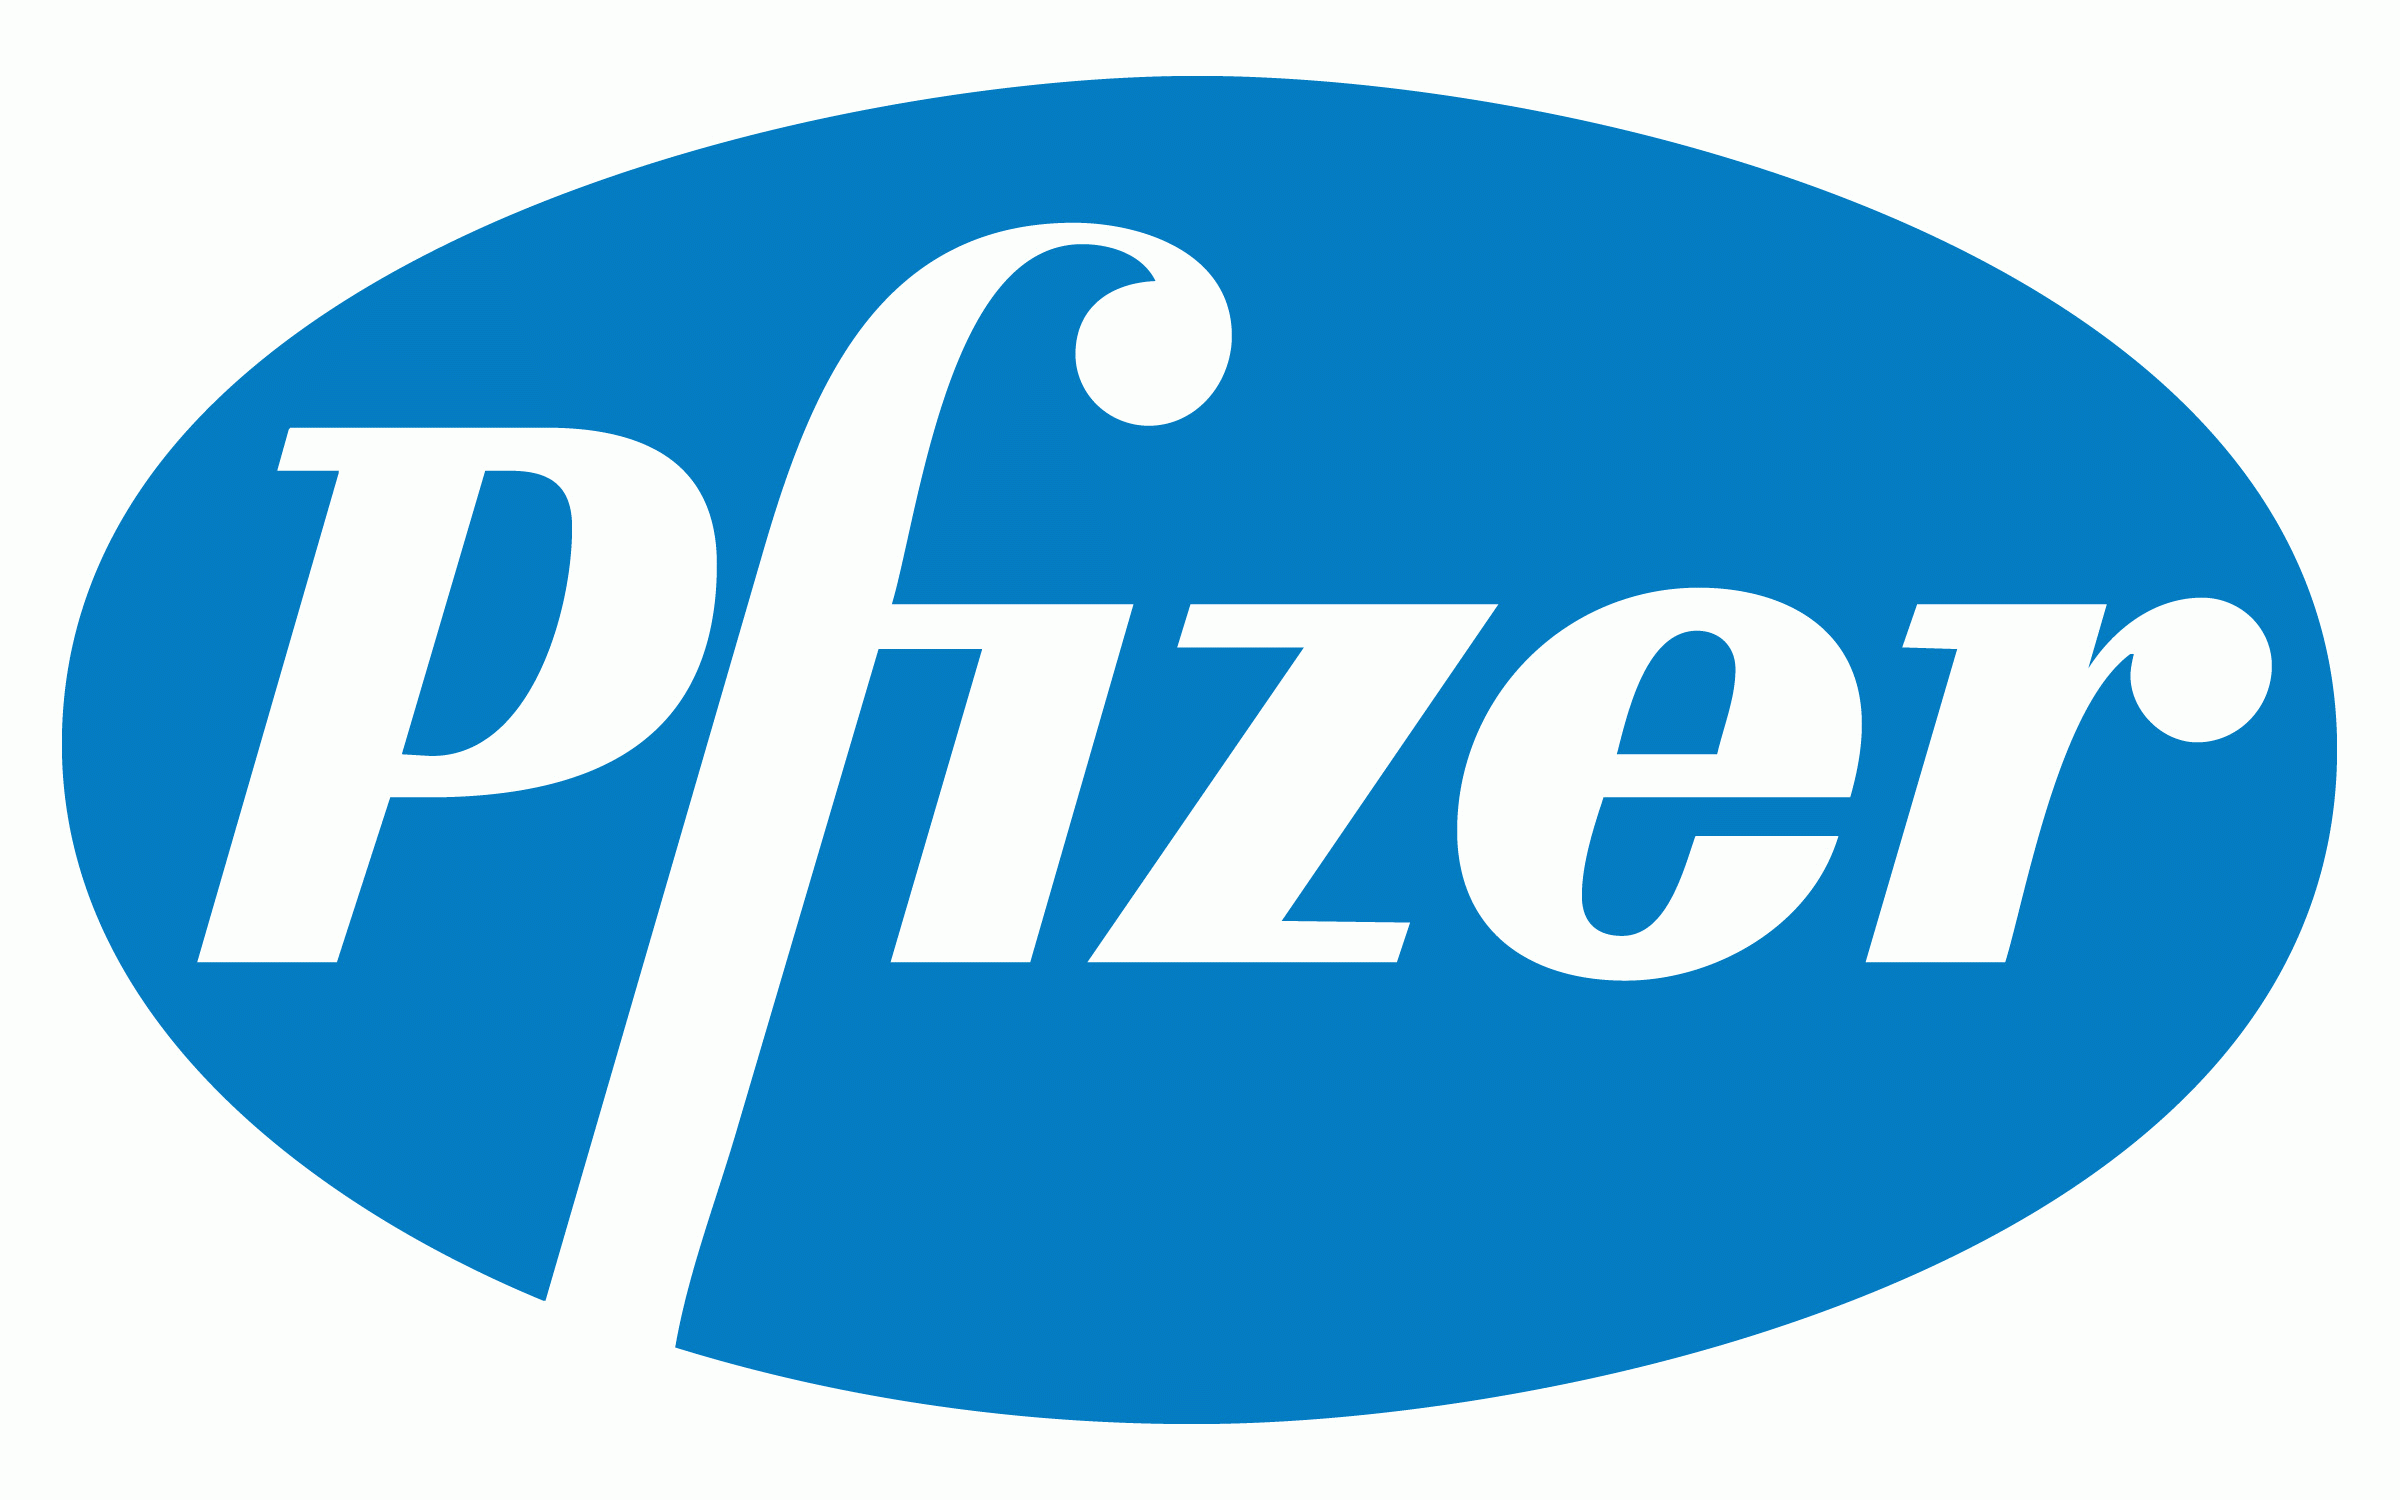  Pfizer İlaç Sektörünün En Gözde Şirketi Seçildi 